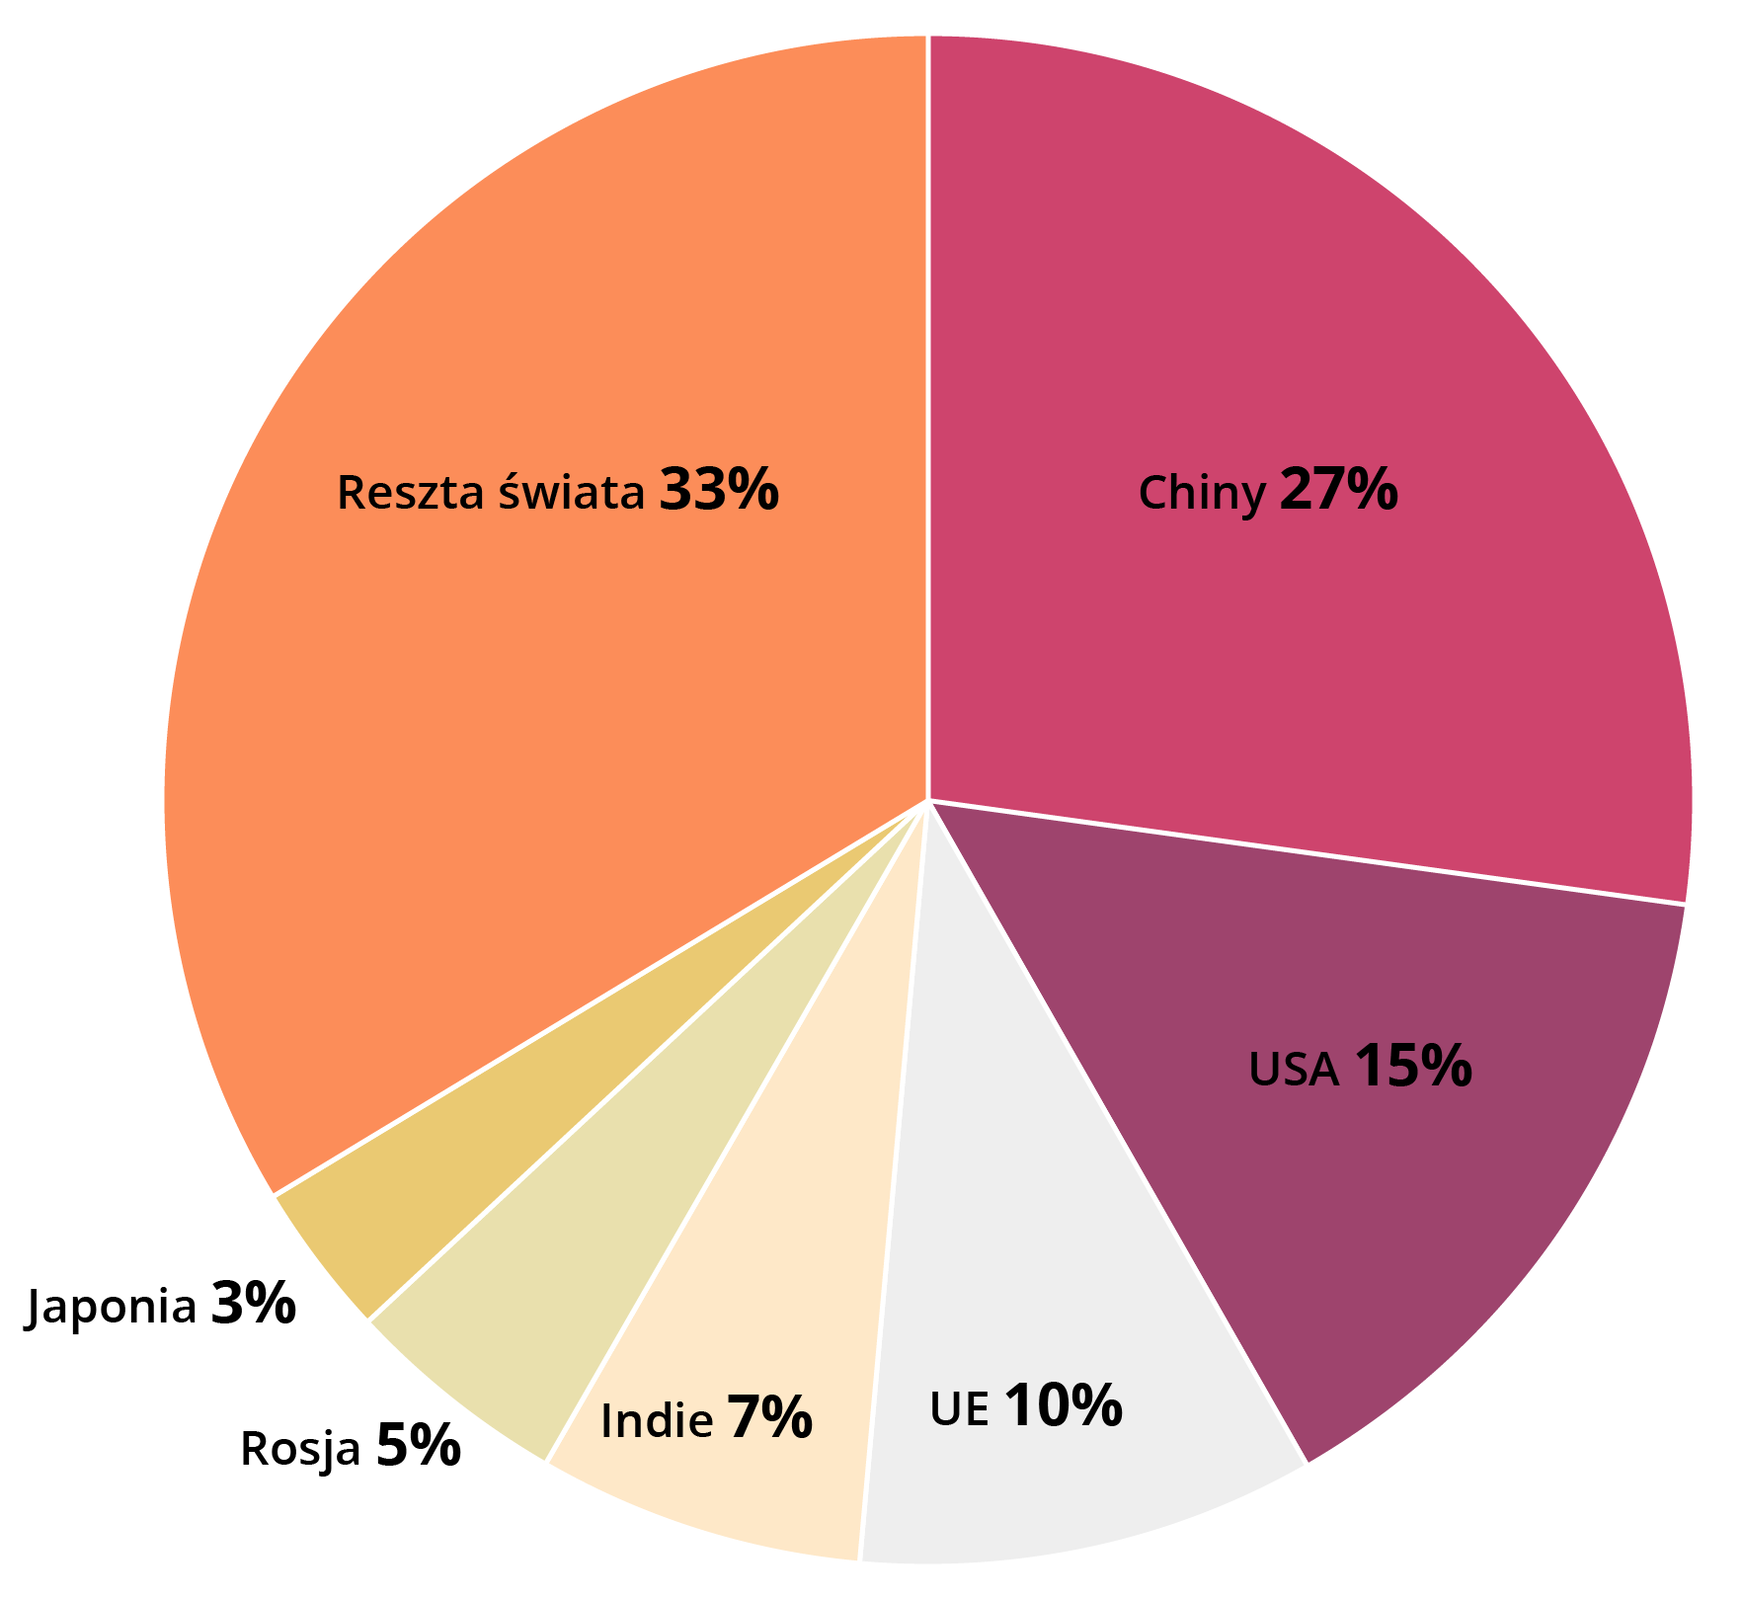 Wykres kołowy przedstawia udział największych emitentów dwutlenku węgla w globalnych emisjach w 2017 roku. Według niego Chiny wyprodukowały 27% dwutlenku węgla na świecie, USA 15%, Kraje Unii Europejskiej 10%, Indie 7%, Rosja 5%, Japonia 3%, a państwa reszty świata 33% w 2017 roku. 